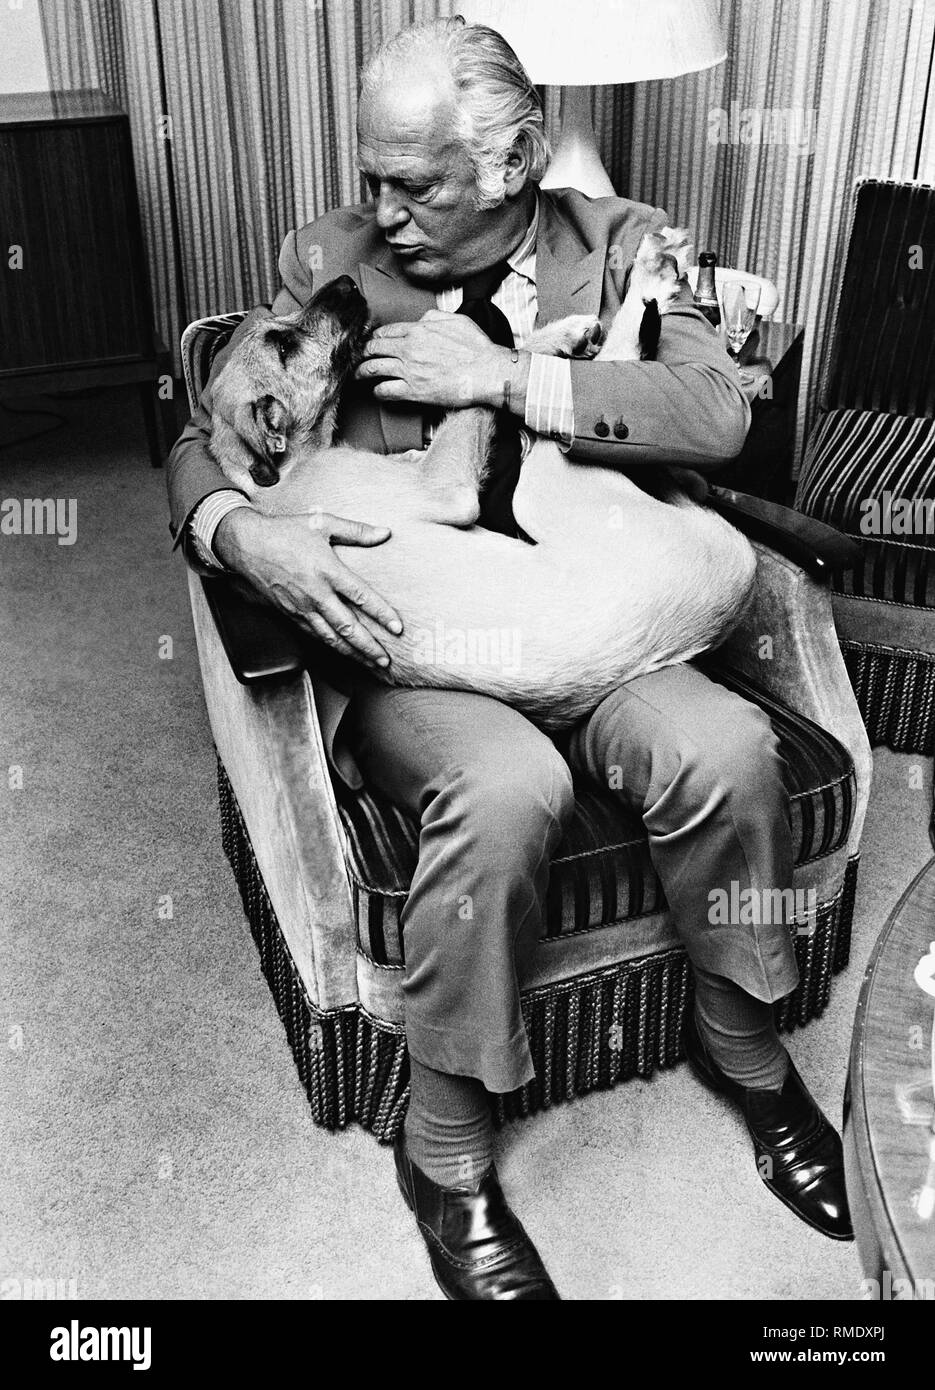 L'acteur Curd Juergens avec son chien. Photo non datée, probablement dans les années 1970. Banque D'Images